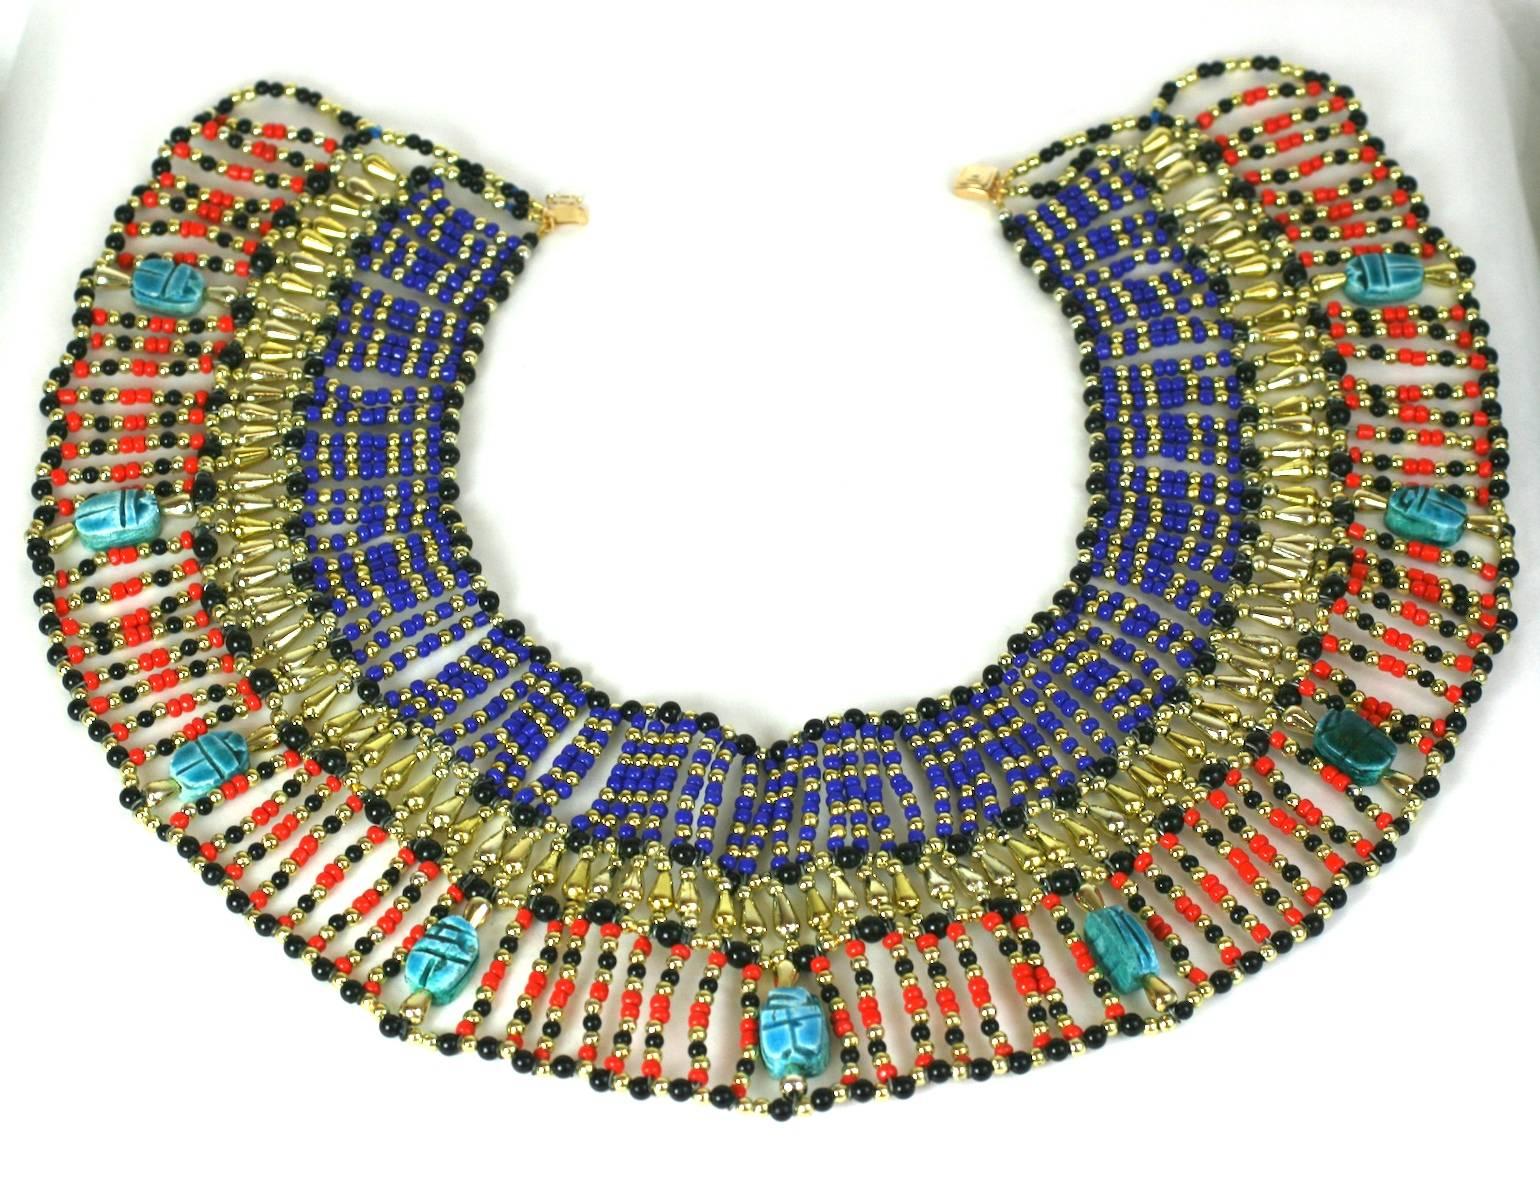 Grand bavoir de style néo-eygptien fait à la main dans les années 1960. Des perles de toutes formes et tailles en résine, verre et plastique sont utilisées pour simuler le lapis, l'or, le corail et le jais avec de véritables scarabées en faïence.